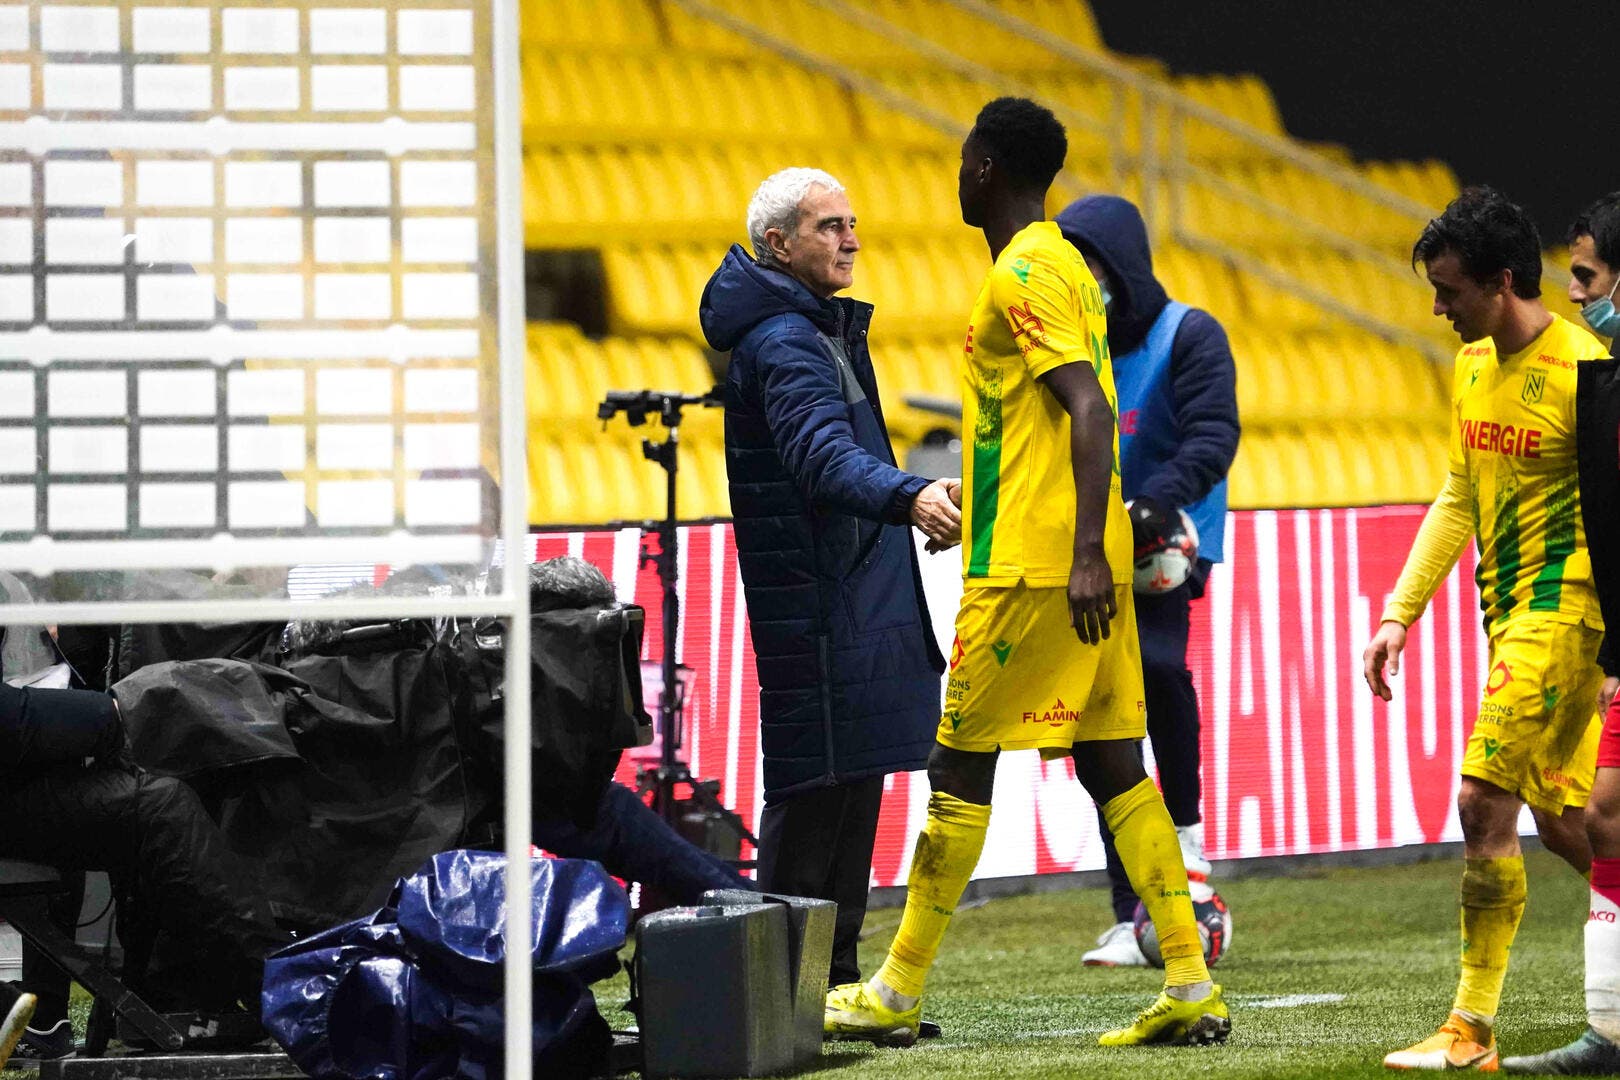 Photo of Futebol Nantes – FCN: Domenech cambia de opinión y sigue siendo polémico